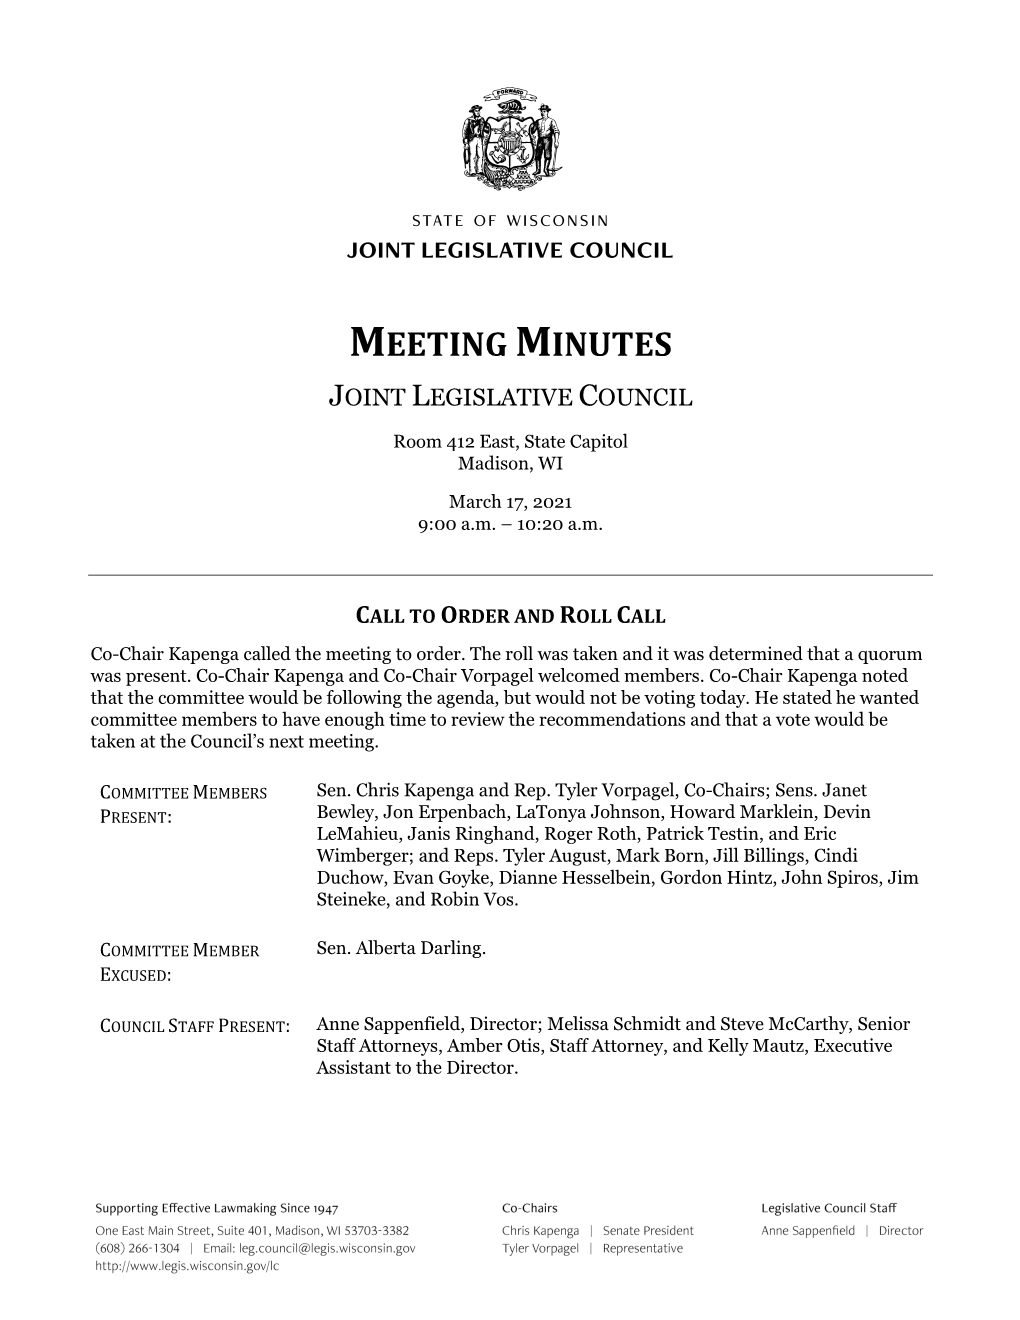 Meeting Minutes Joint Legislative Council